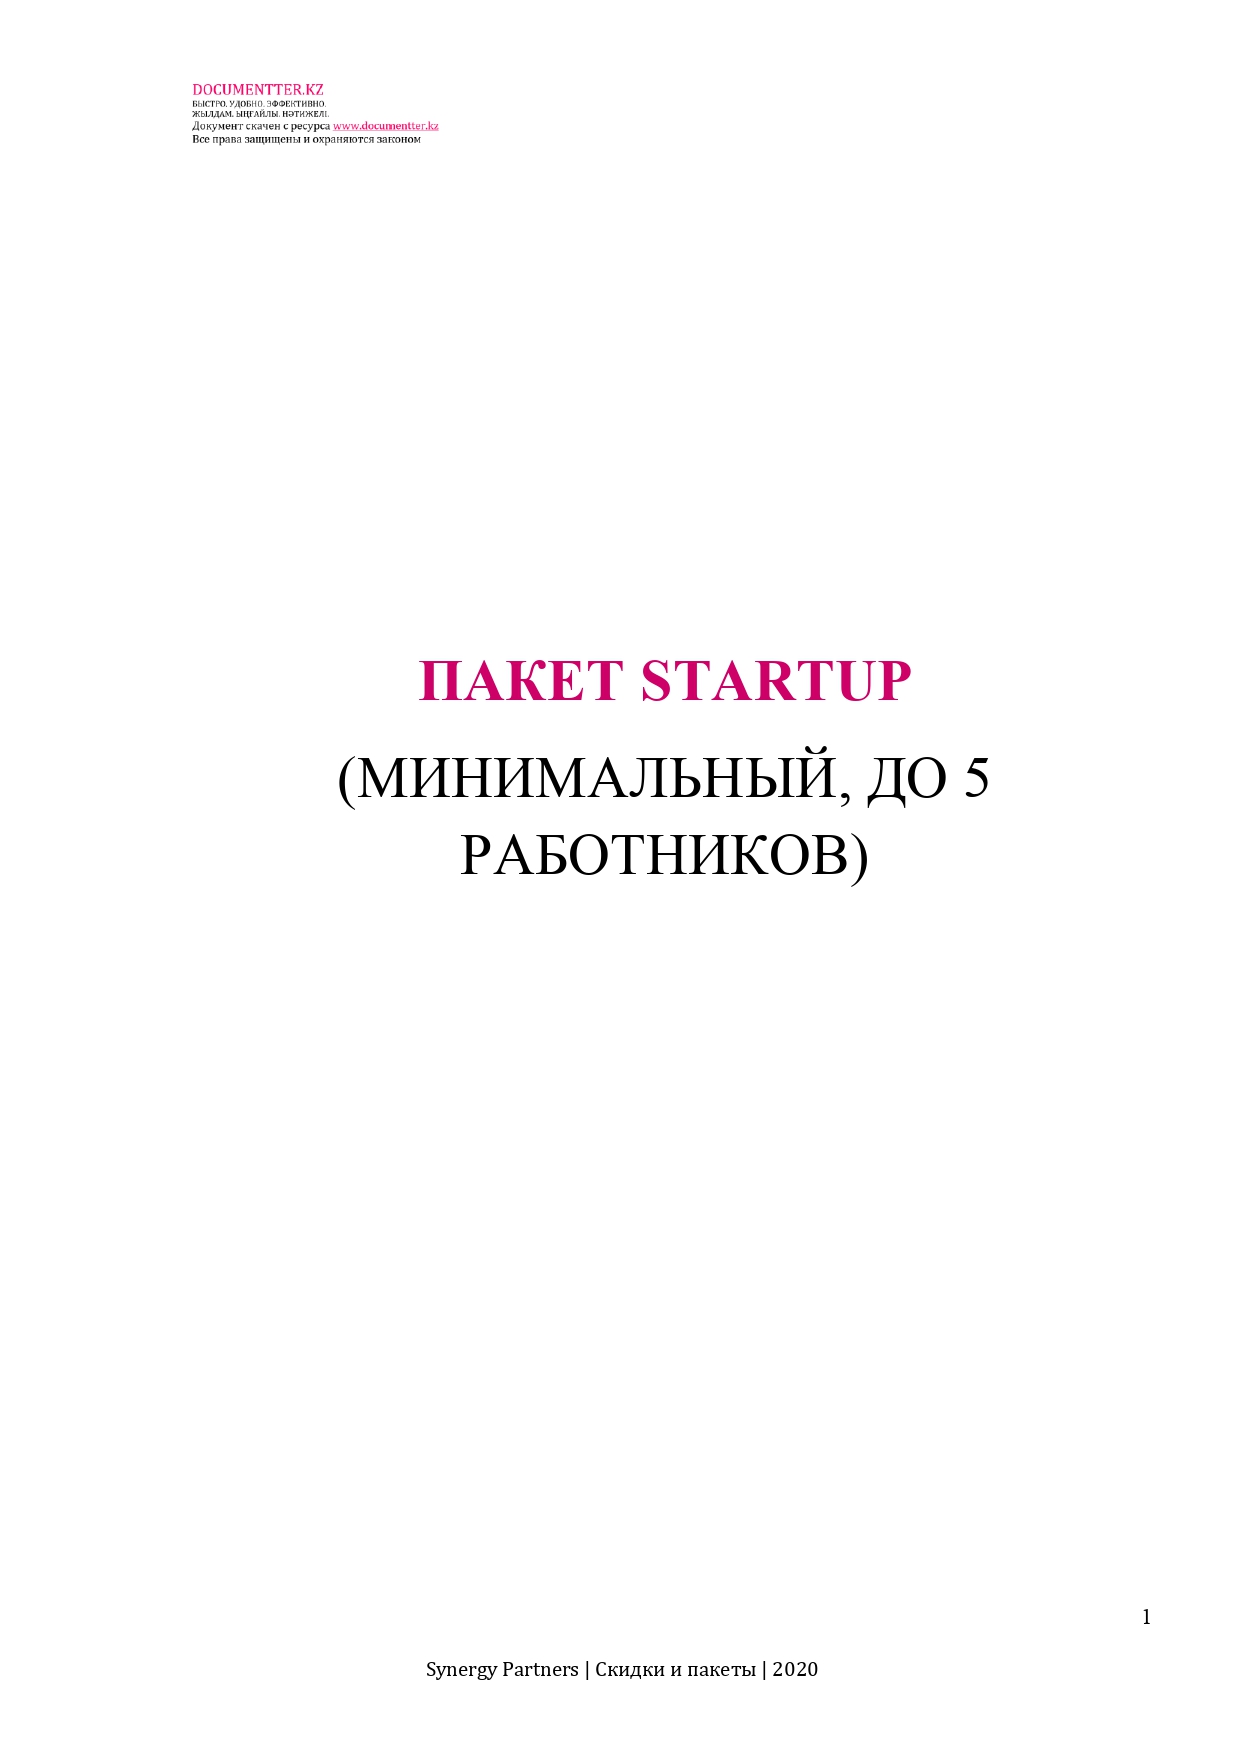 Пакет Startup (минимальный до 5 работников) | documentterkz.com в Казахстане